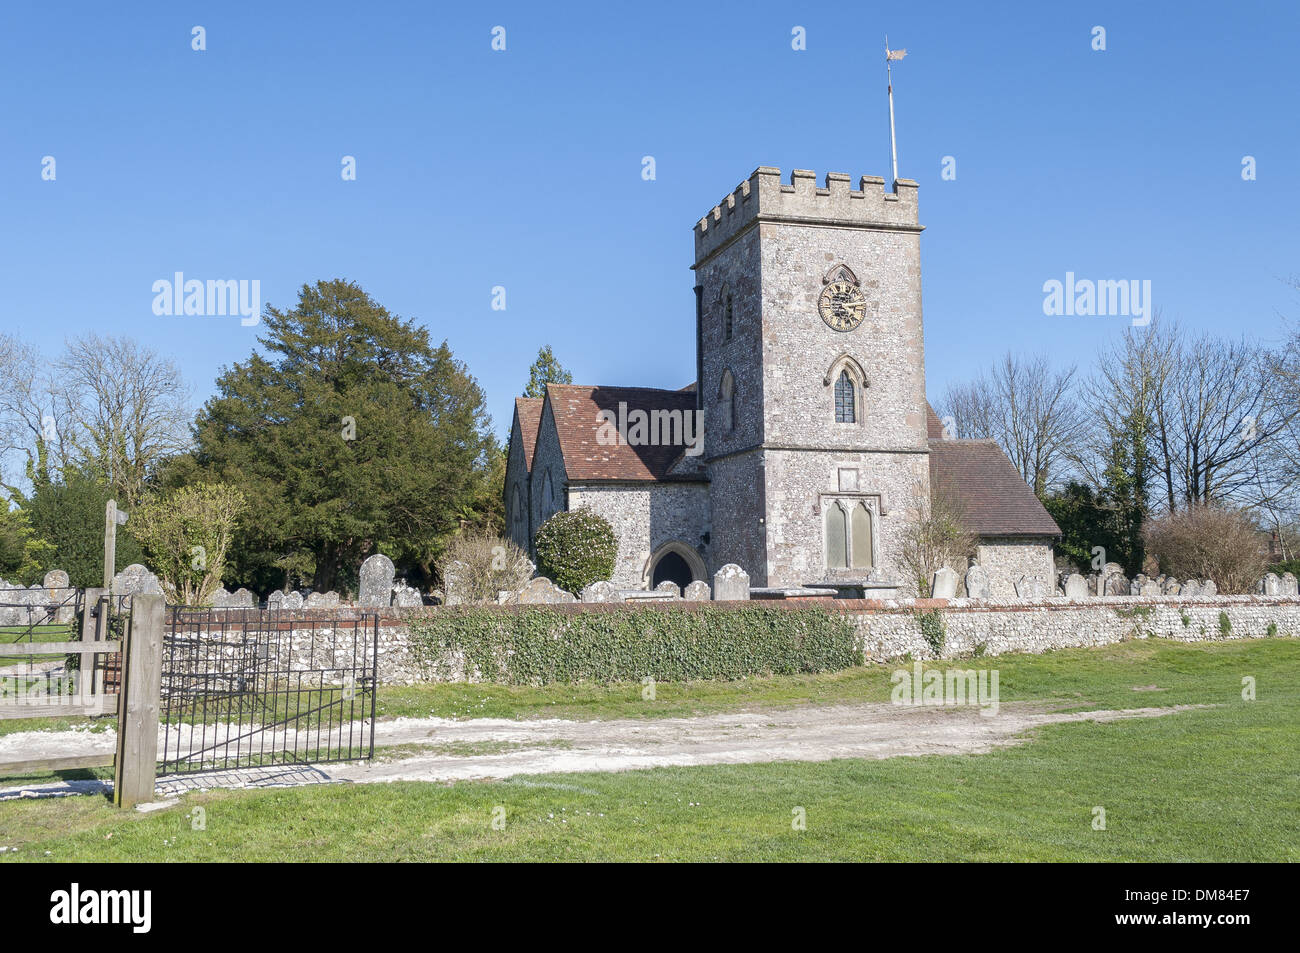 St Andrew's Church dans Owslebury, un petit village rural à 5 miles à l'extérieur de Winchester dans le Hampshire, England, UK Banque D'Images